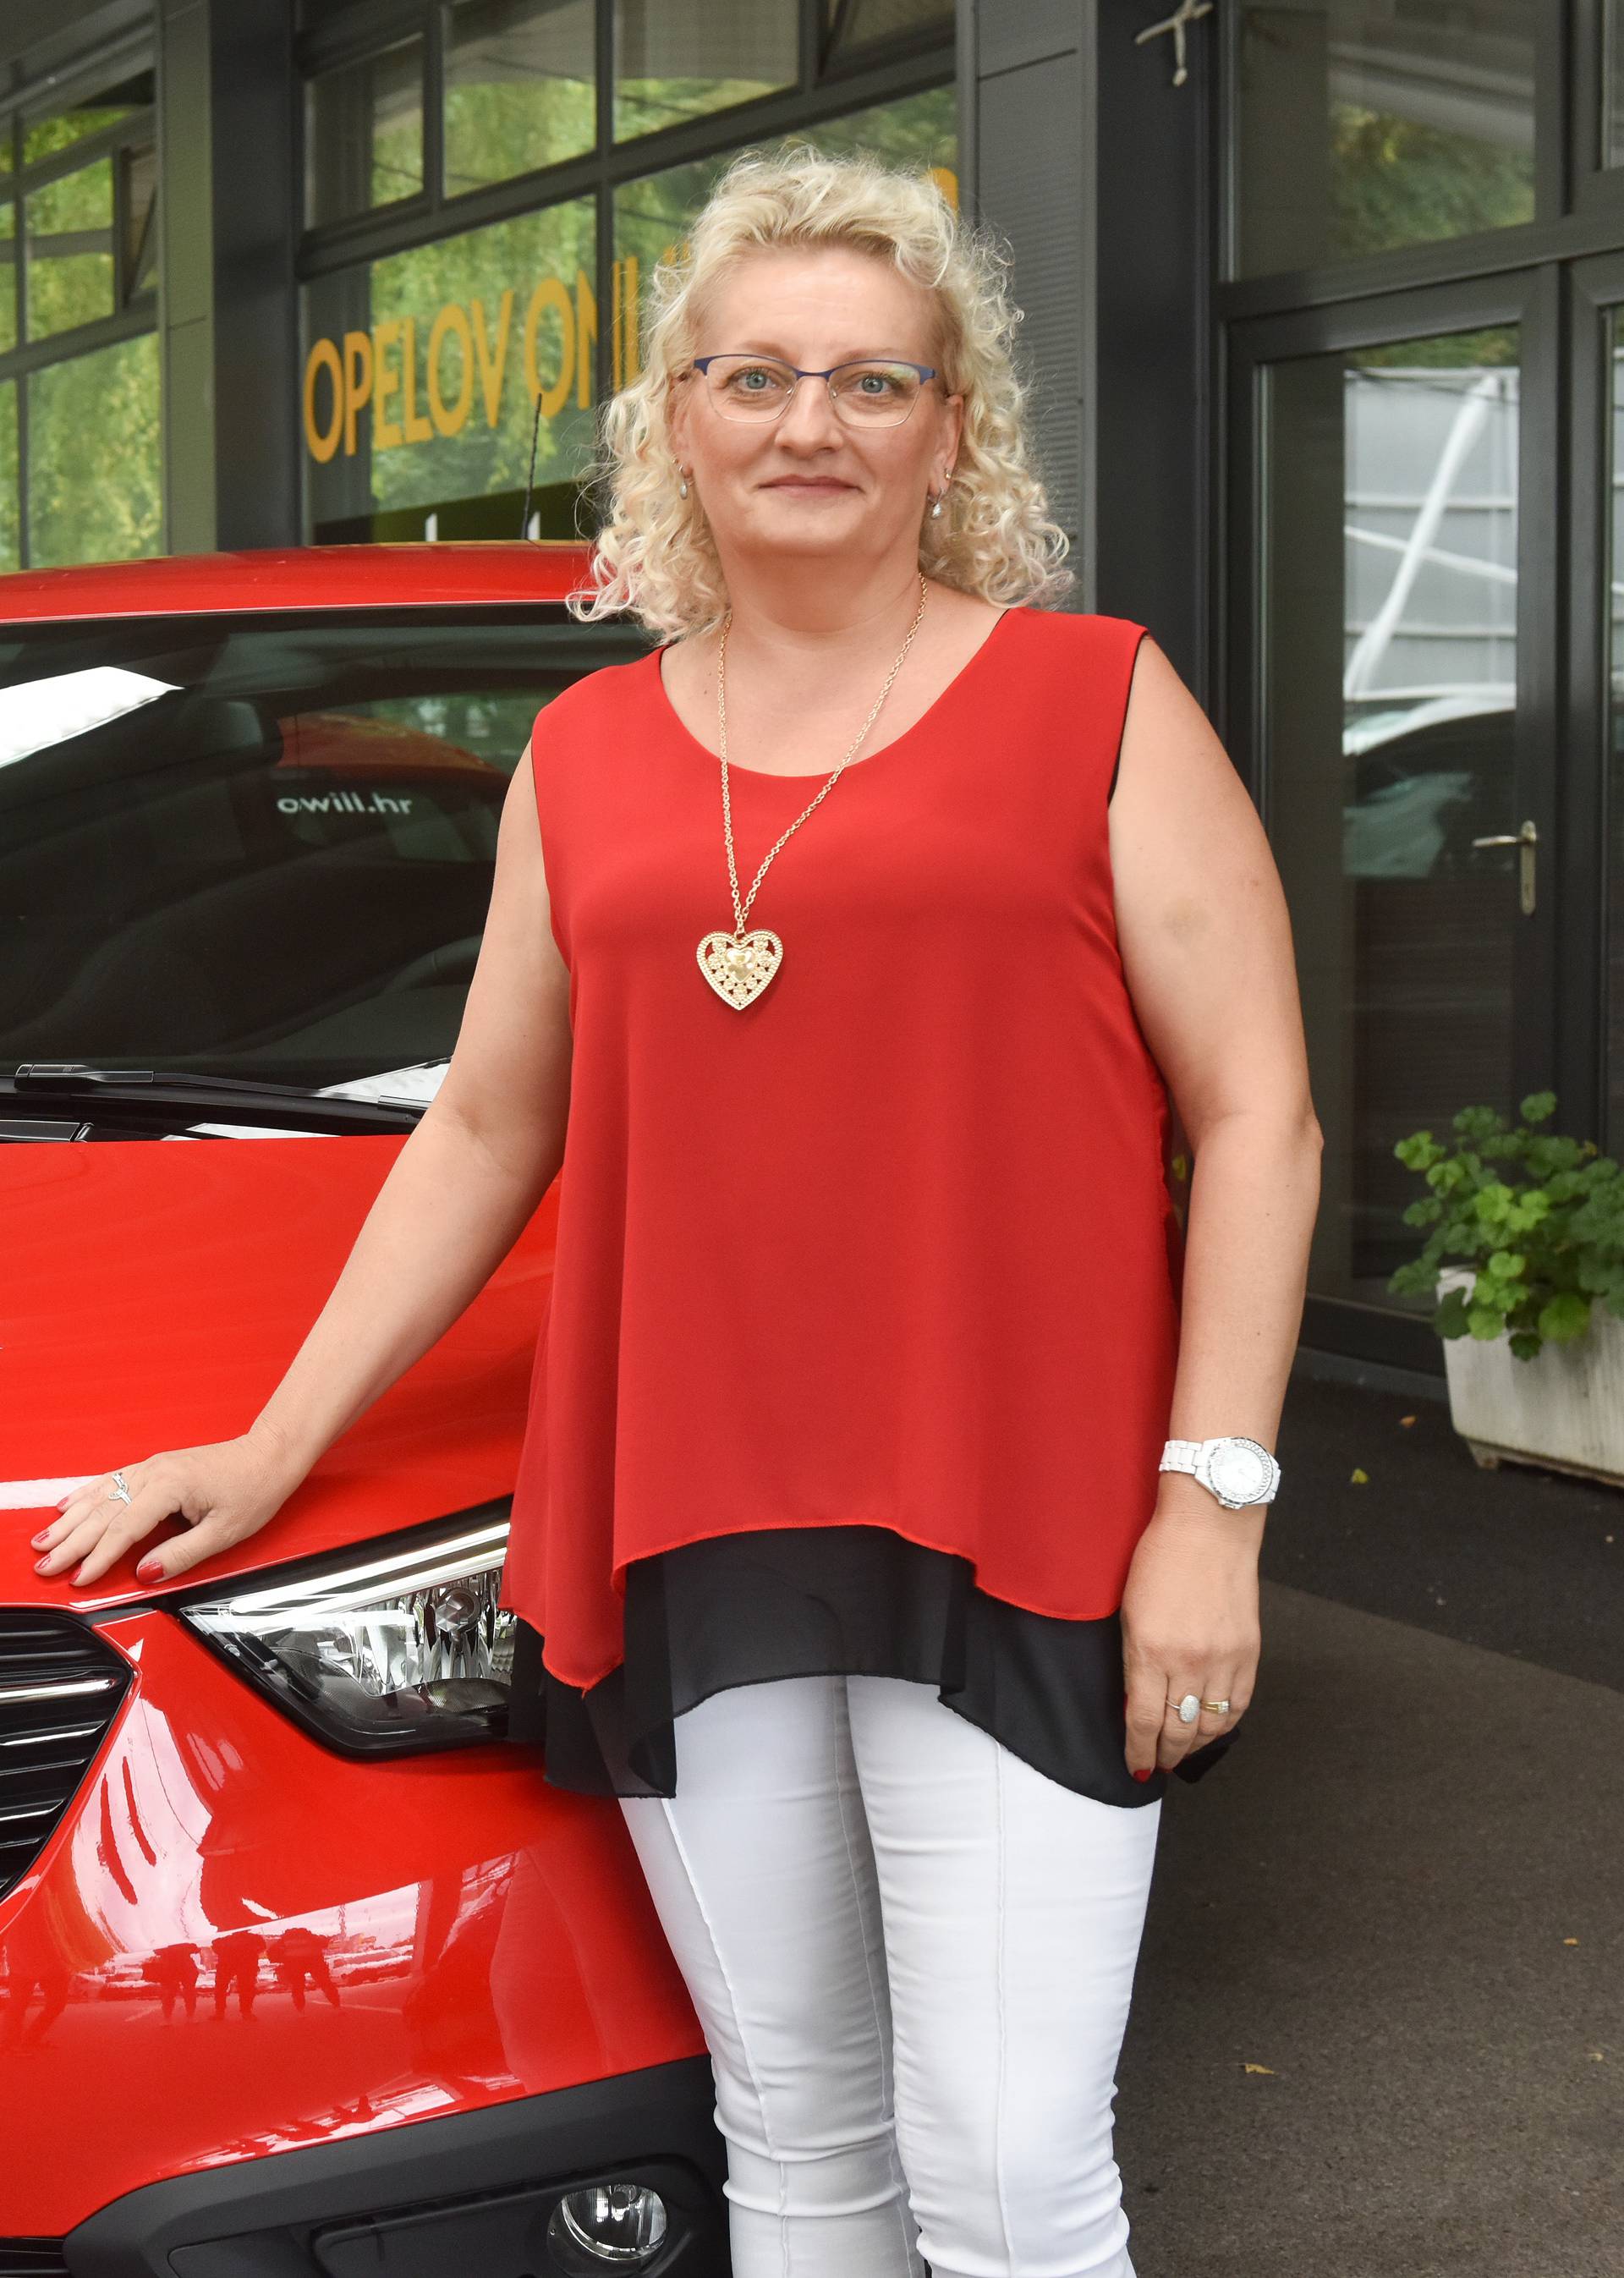 Dobitnica Irena: Bit će pravi užitak voziti Opel Crossland